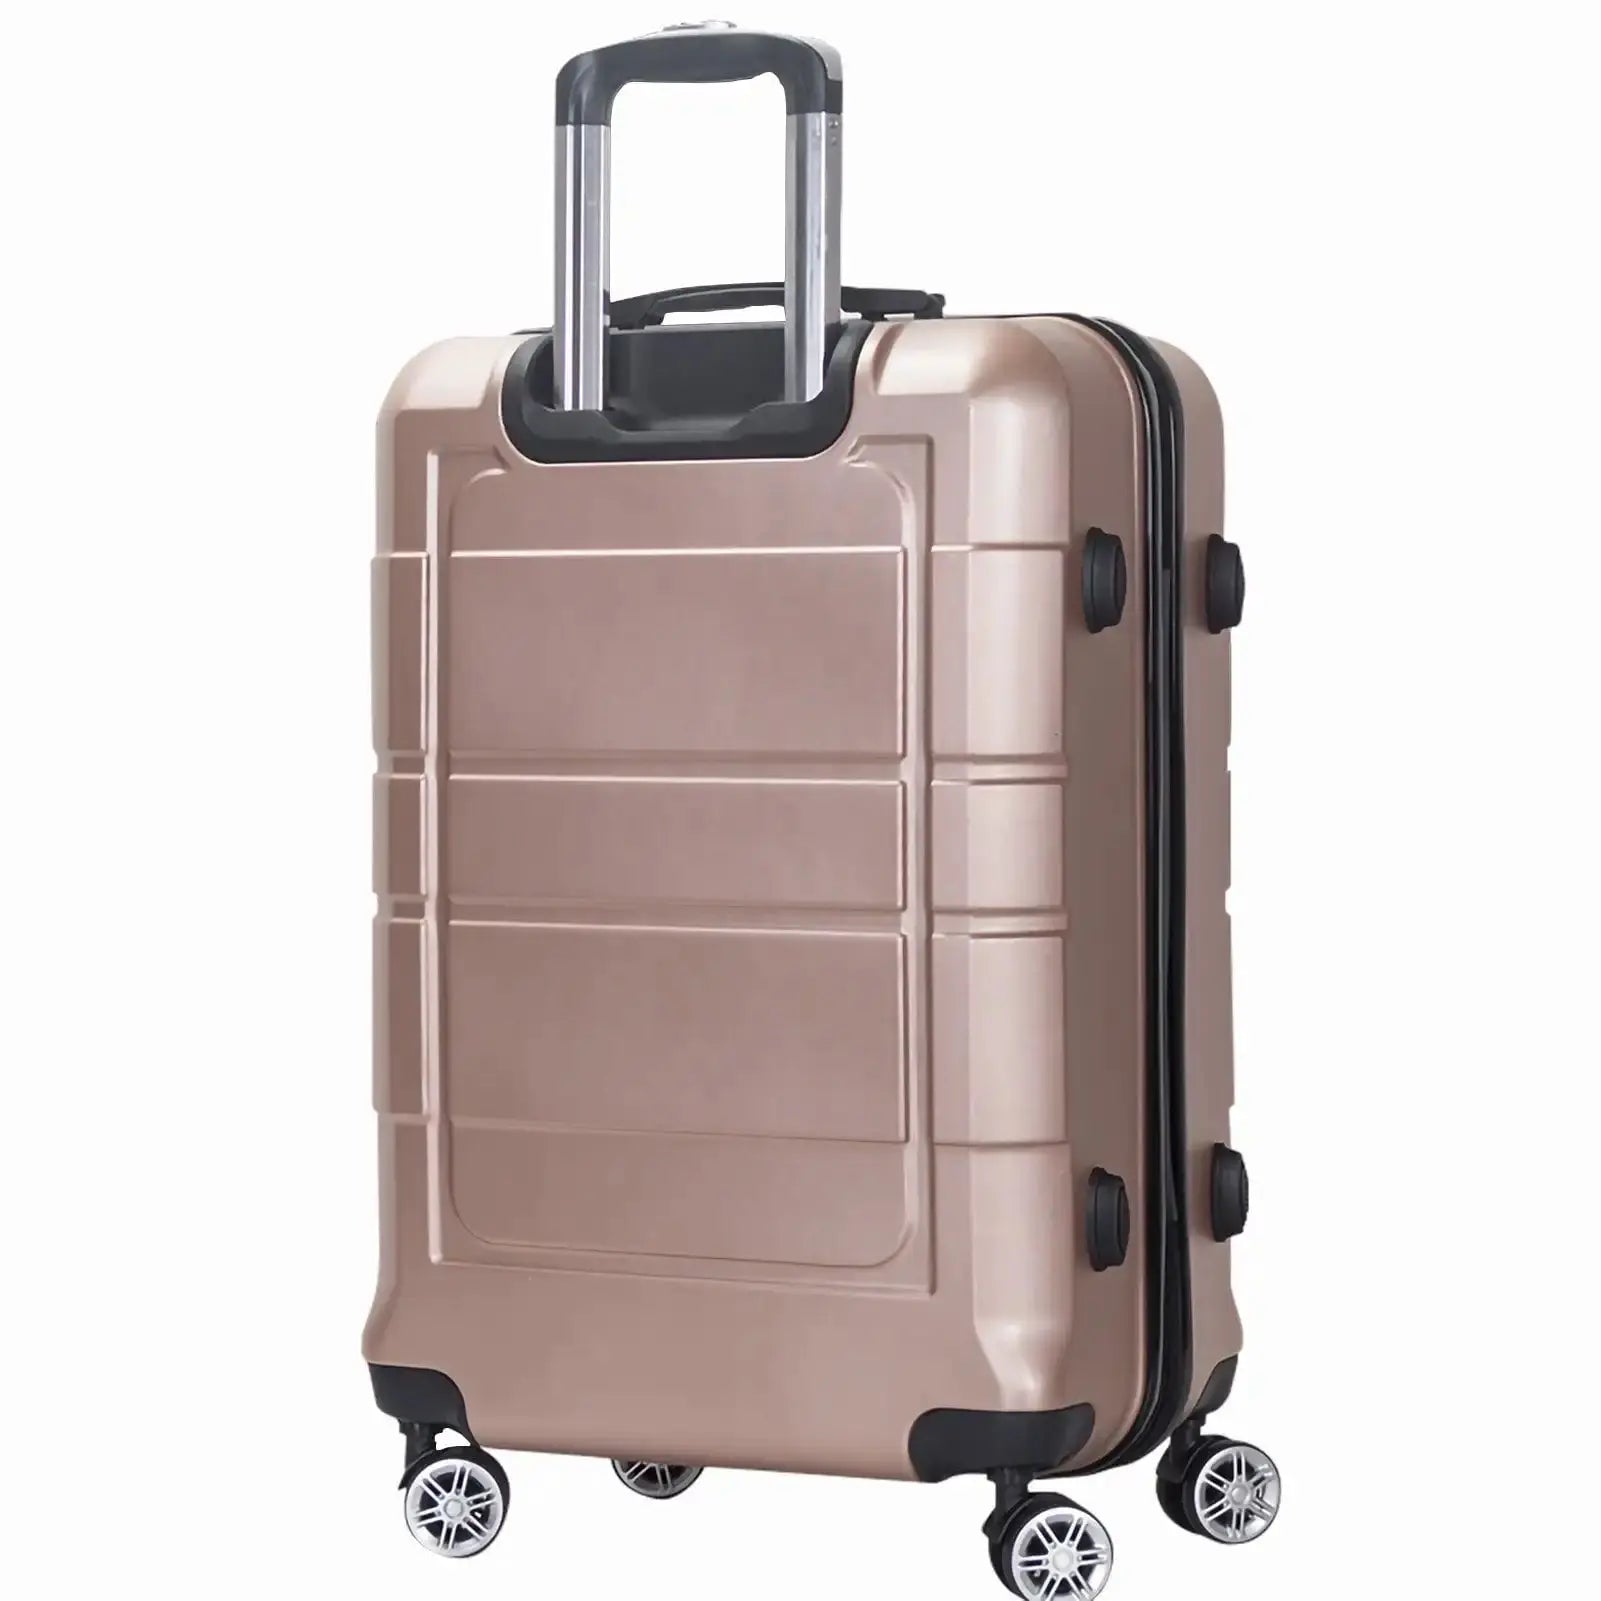 Traveler’s Choice Luxury Luggage Set